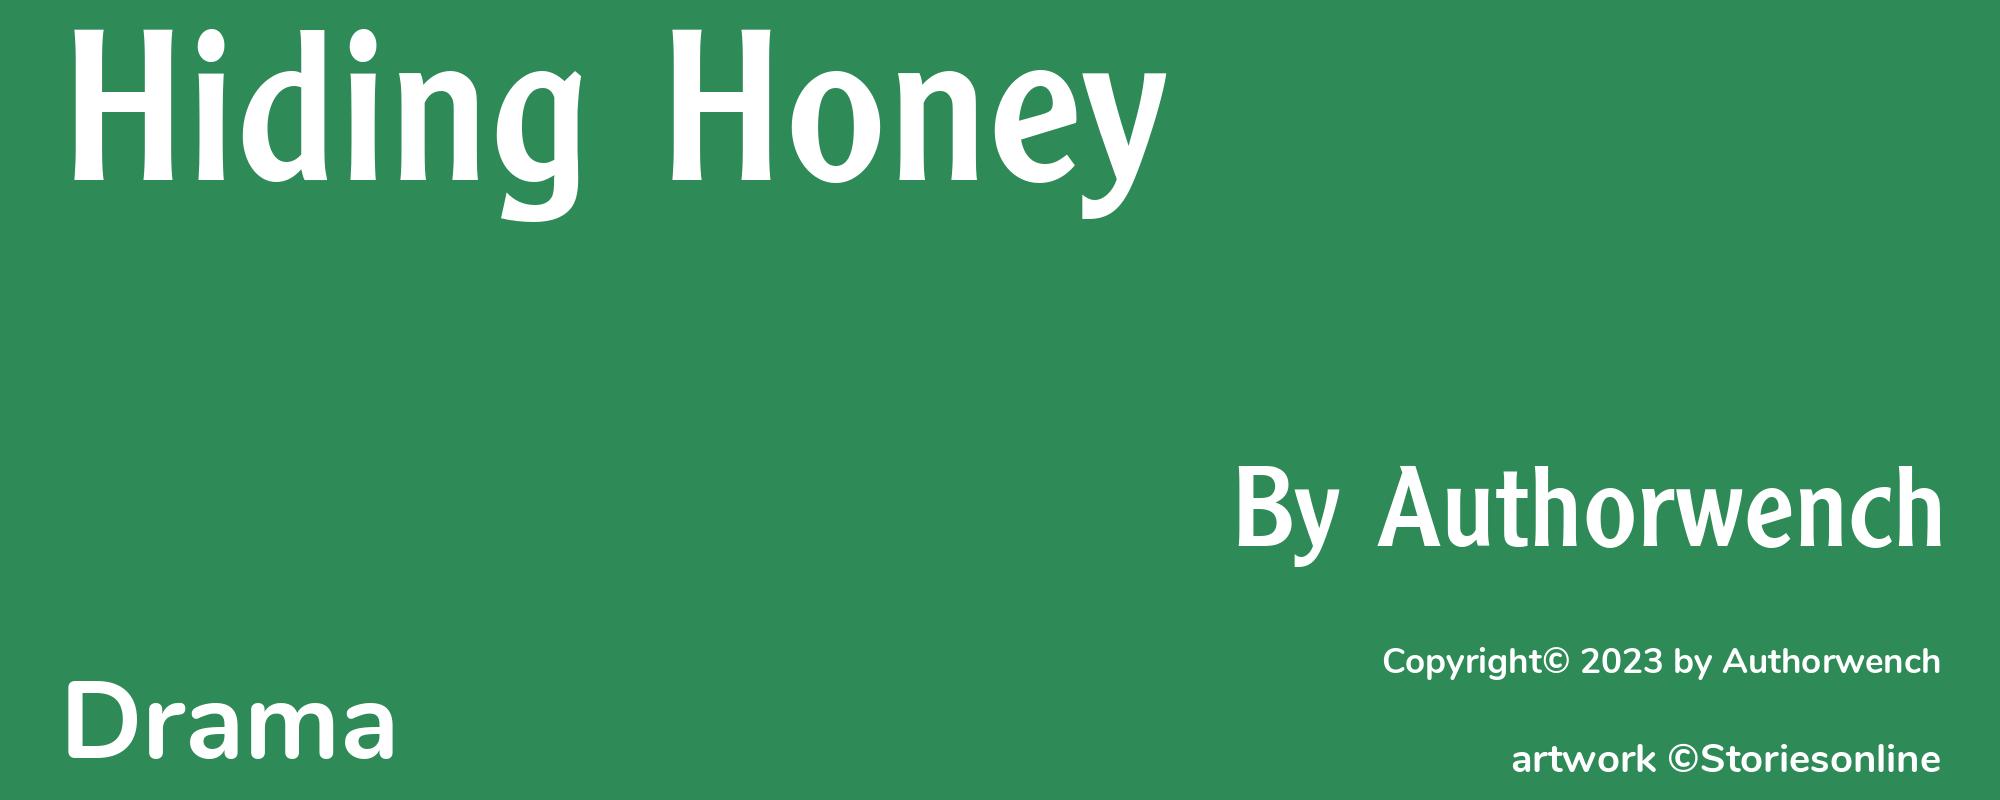 Hiding Honey - Cover